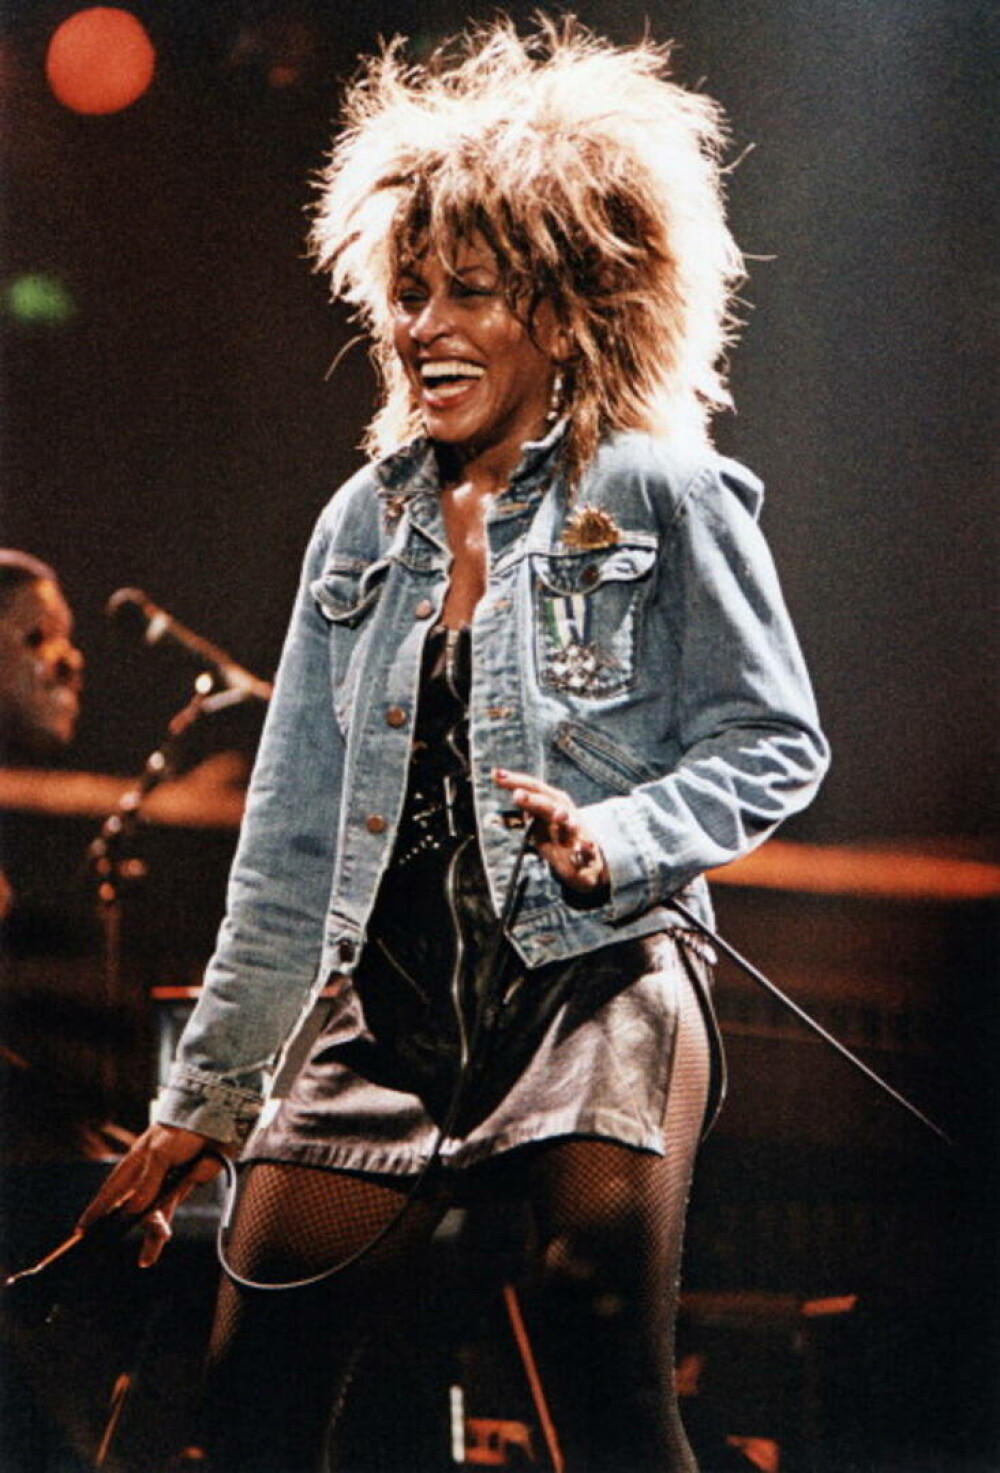 Tina Turner - viața tragică a unui artist legendar. Cântăreața a luat în calcul sinuciderea asistată - Imaginea 14